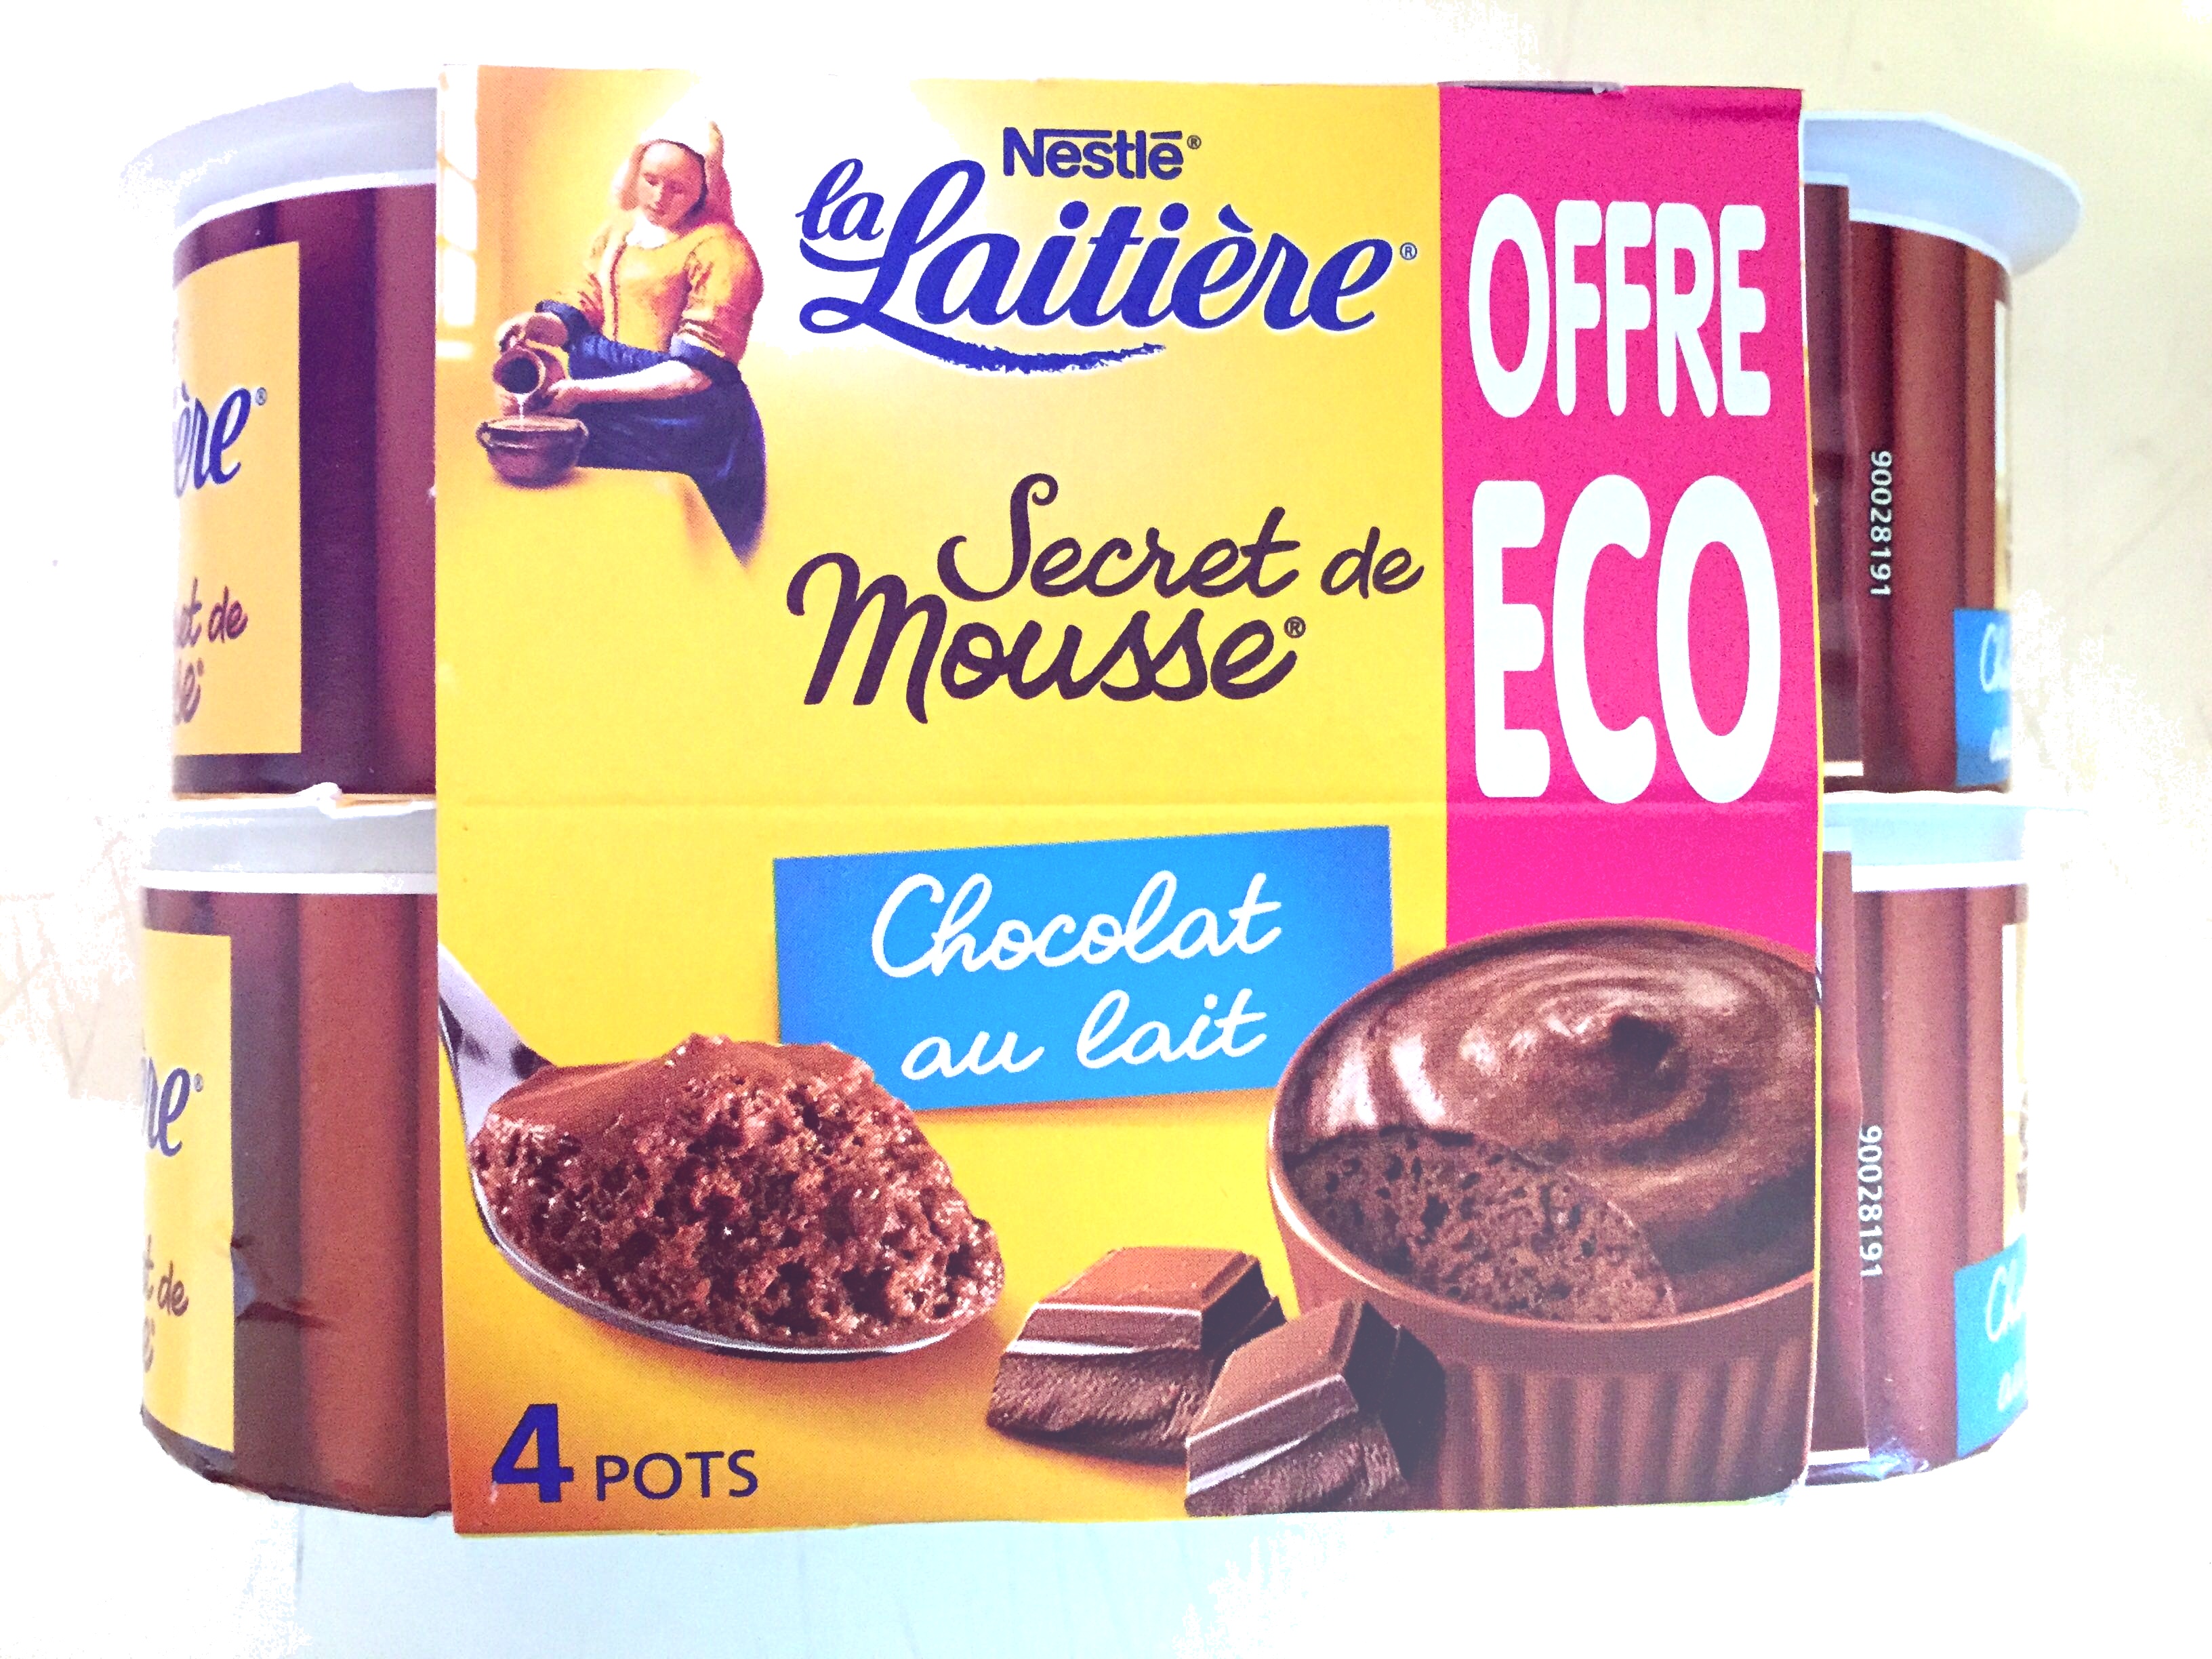 Secret de Mousse Chocolat au lait (4 Pots) Offre Eco - Product - fr